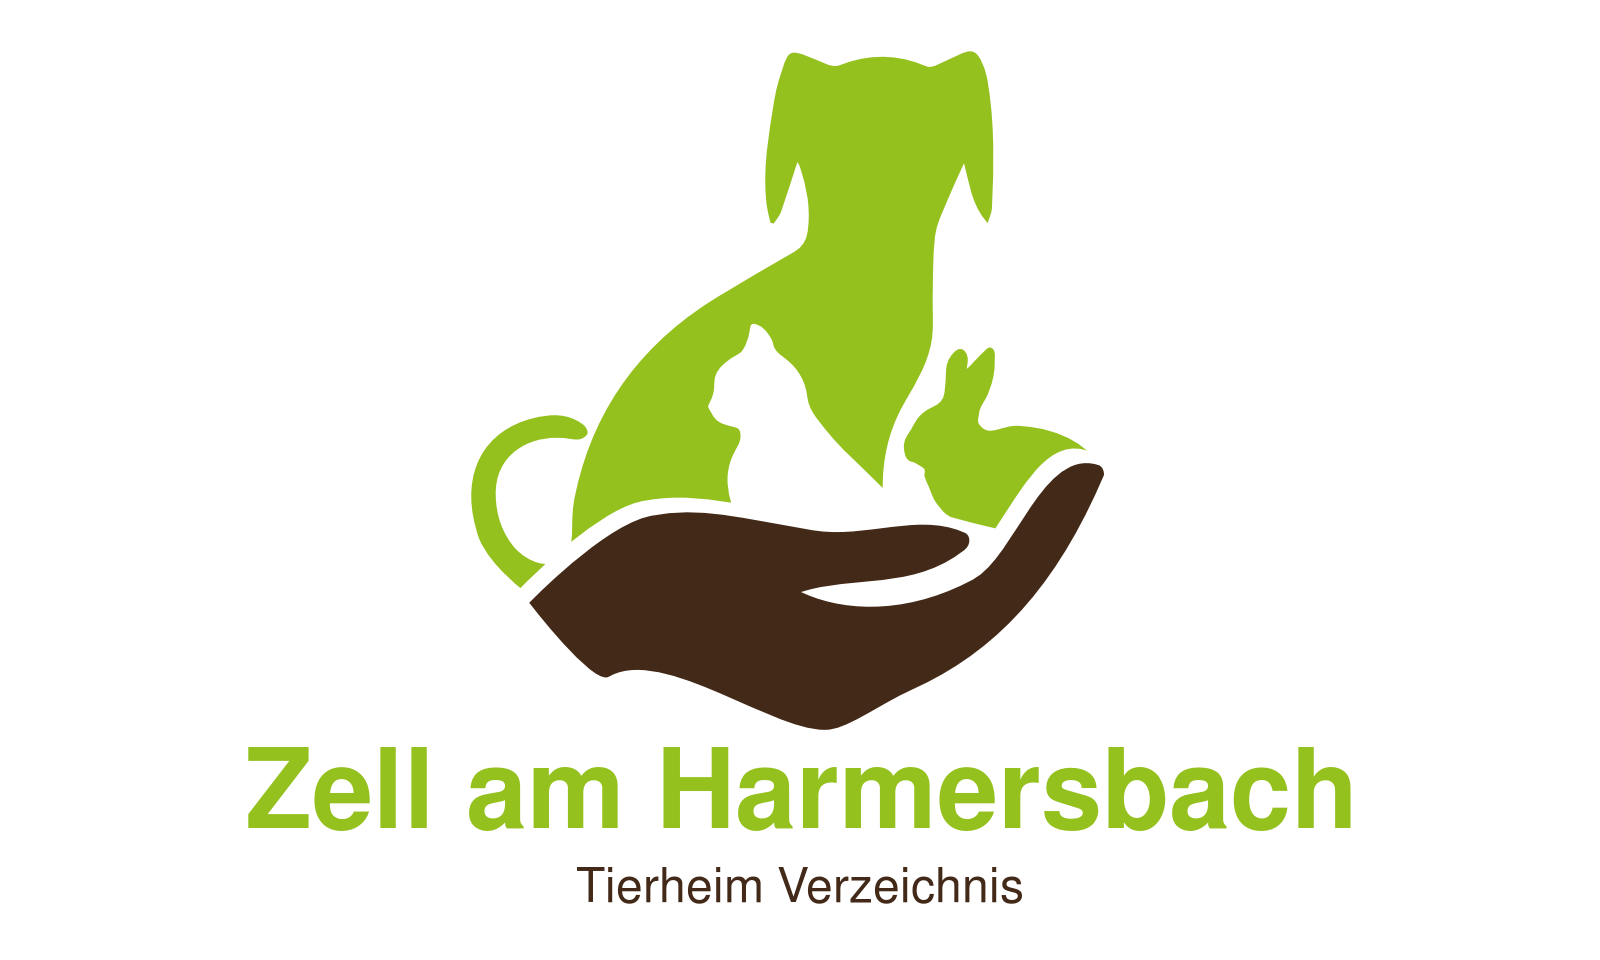 Tierheim Zell am Harmersbach